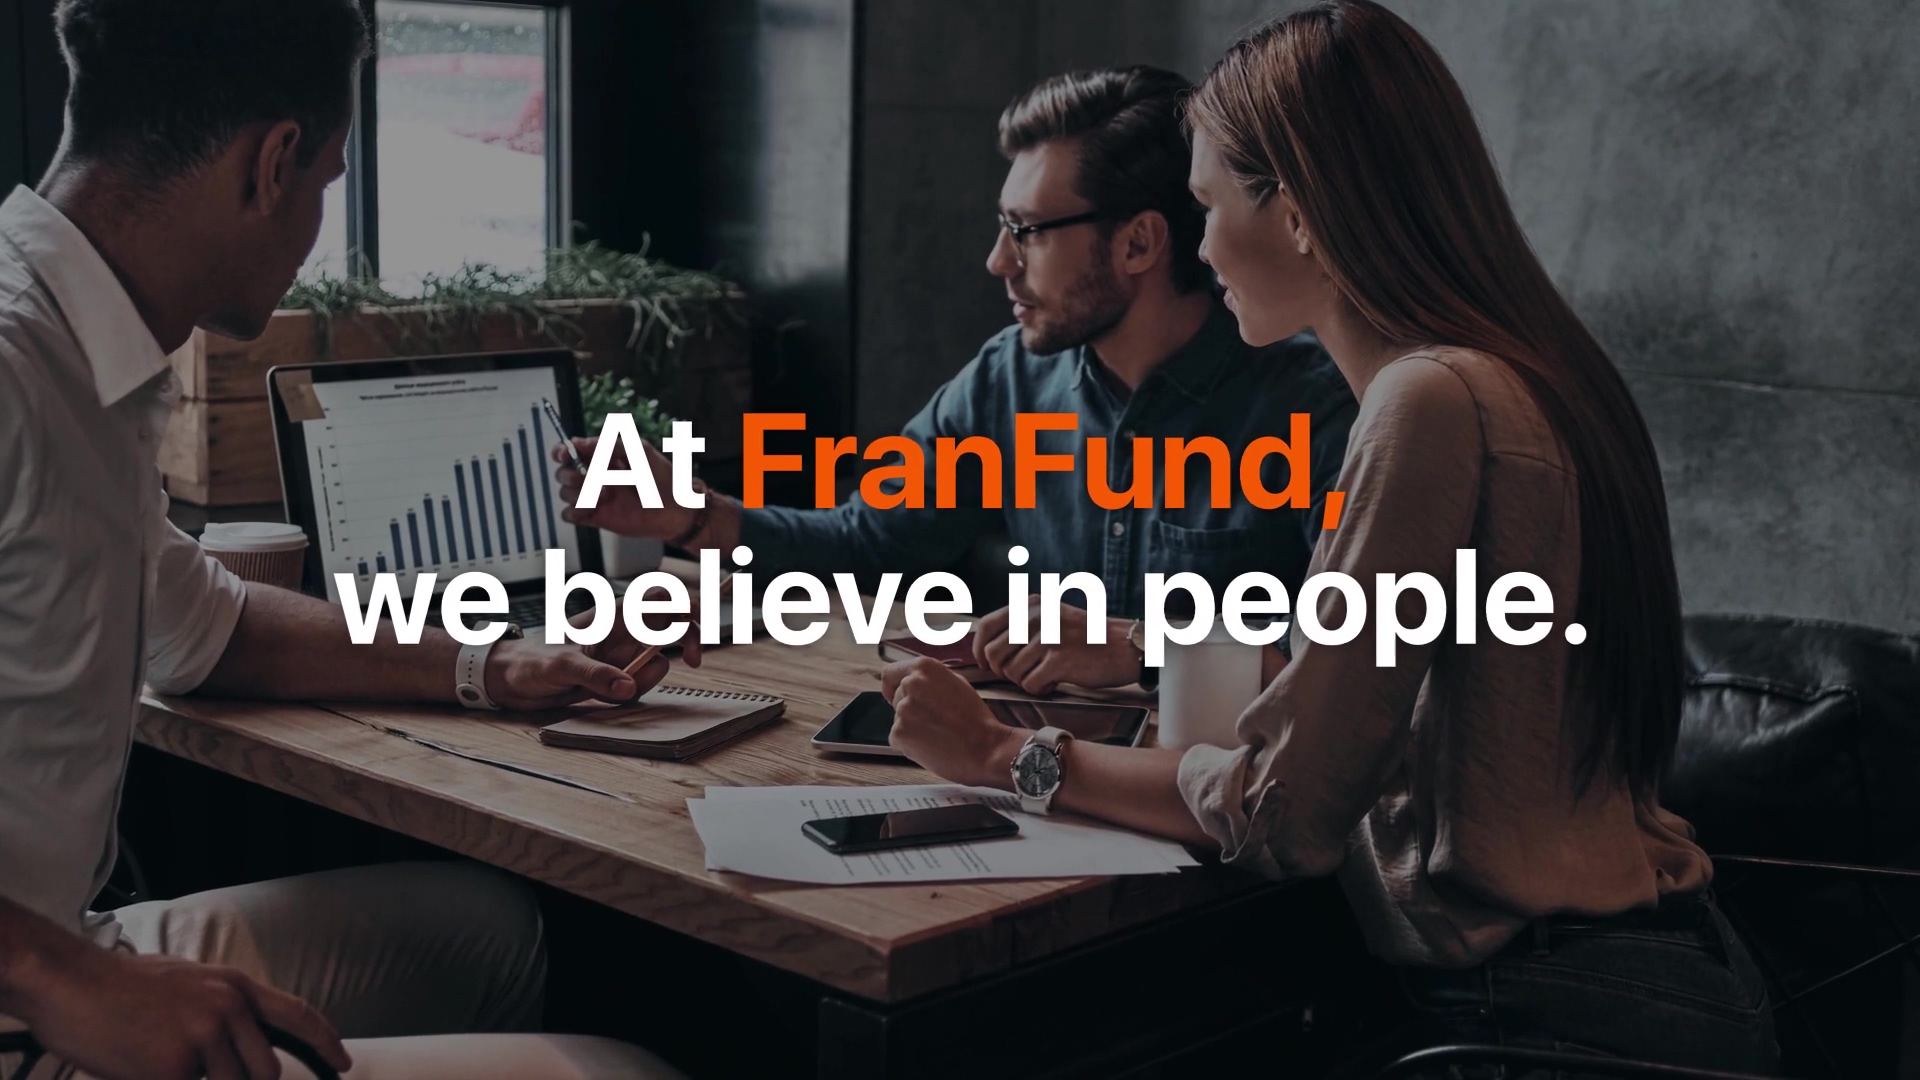 FranFund Brand Video